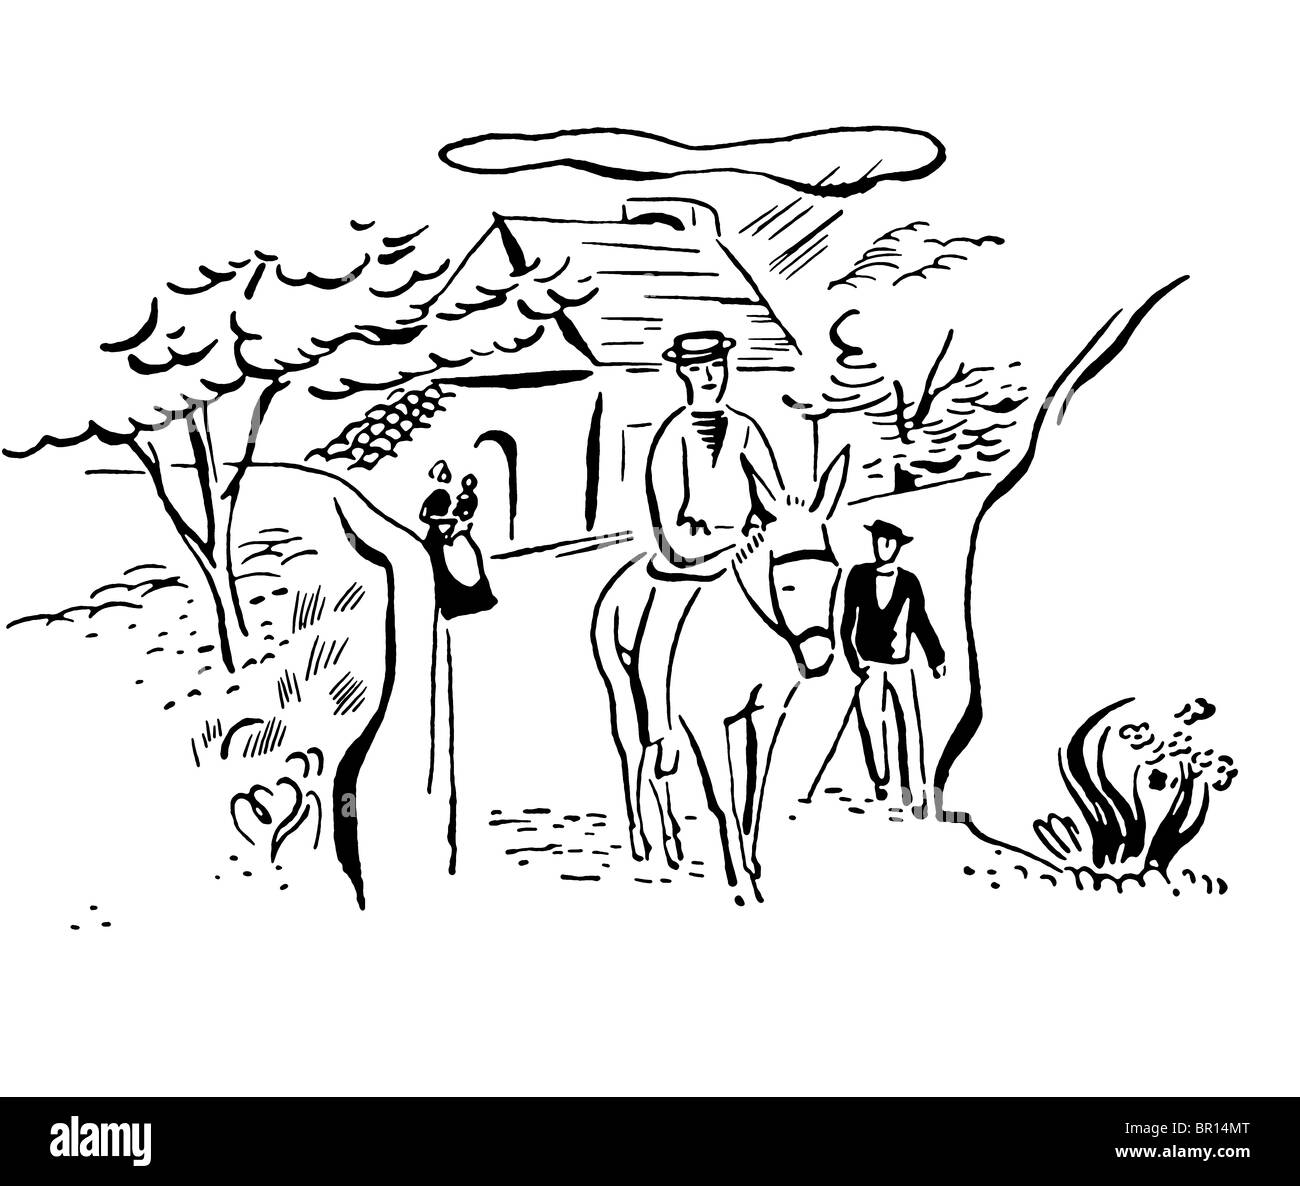 Eine schwarz-weiß Version eines Jahrgangs, die Zeichnung von einem Mann auf einem Esel in einem italienischen Dorf Stockfoto